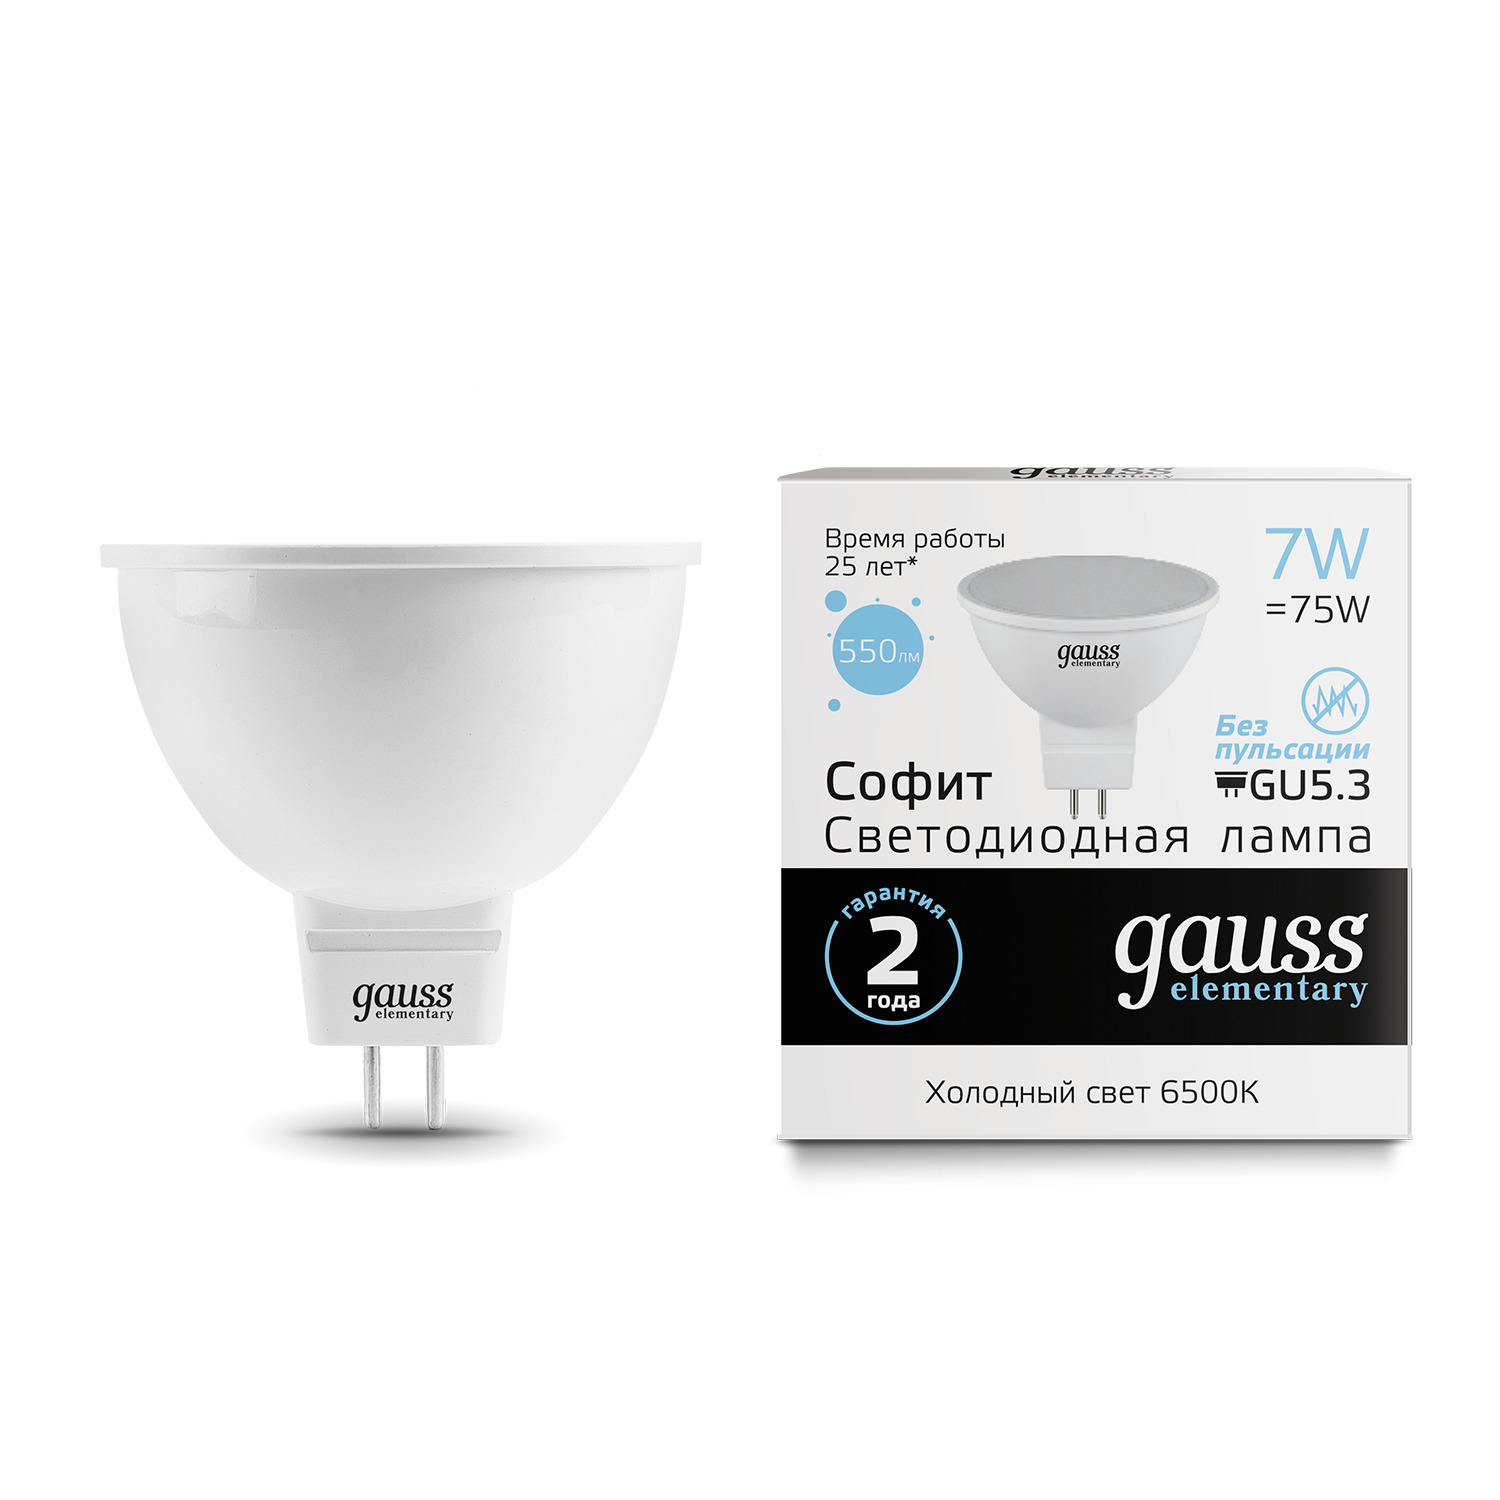 Лампа Gauss LED Elementary MR16 GU5.3 7W 6500K gauss led elementary mr16 gu5 3 7w 6500k 1 10 100